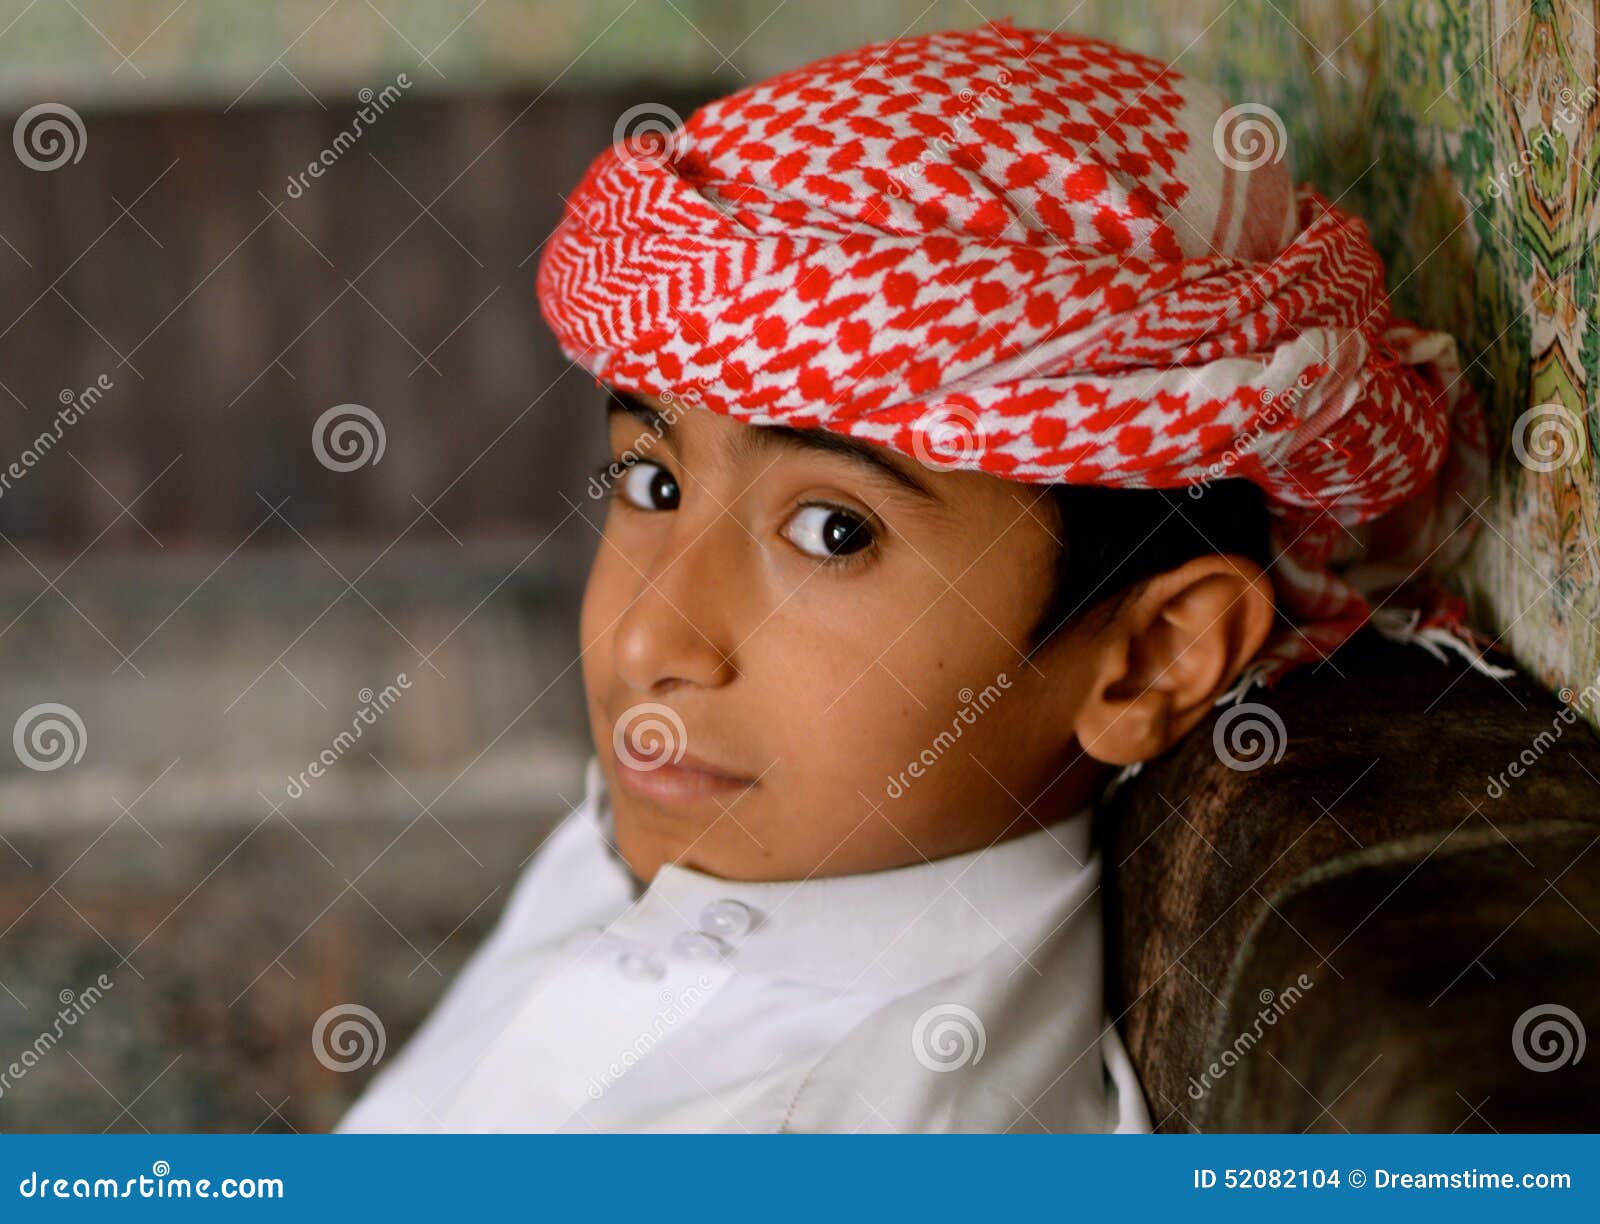 Арабский мальчик. Араб мальчик 13 лет. Арабский мальчик пятнадцатилетний 13-го века. Араб мальчик юбочки. Арабский мальчик Шота.